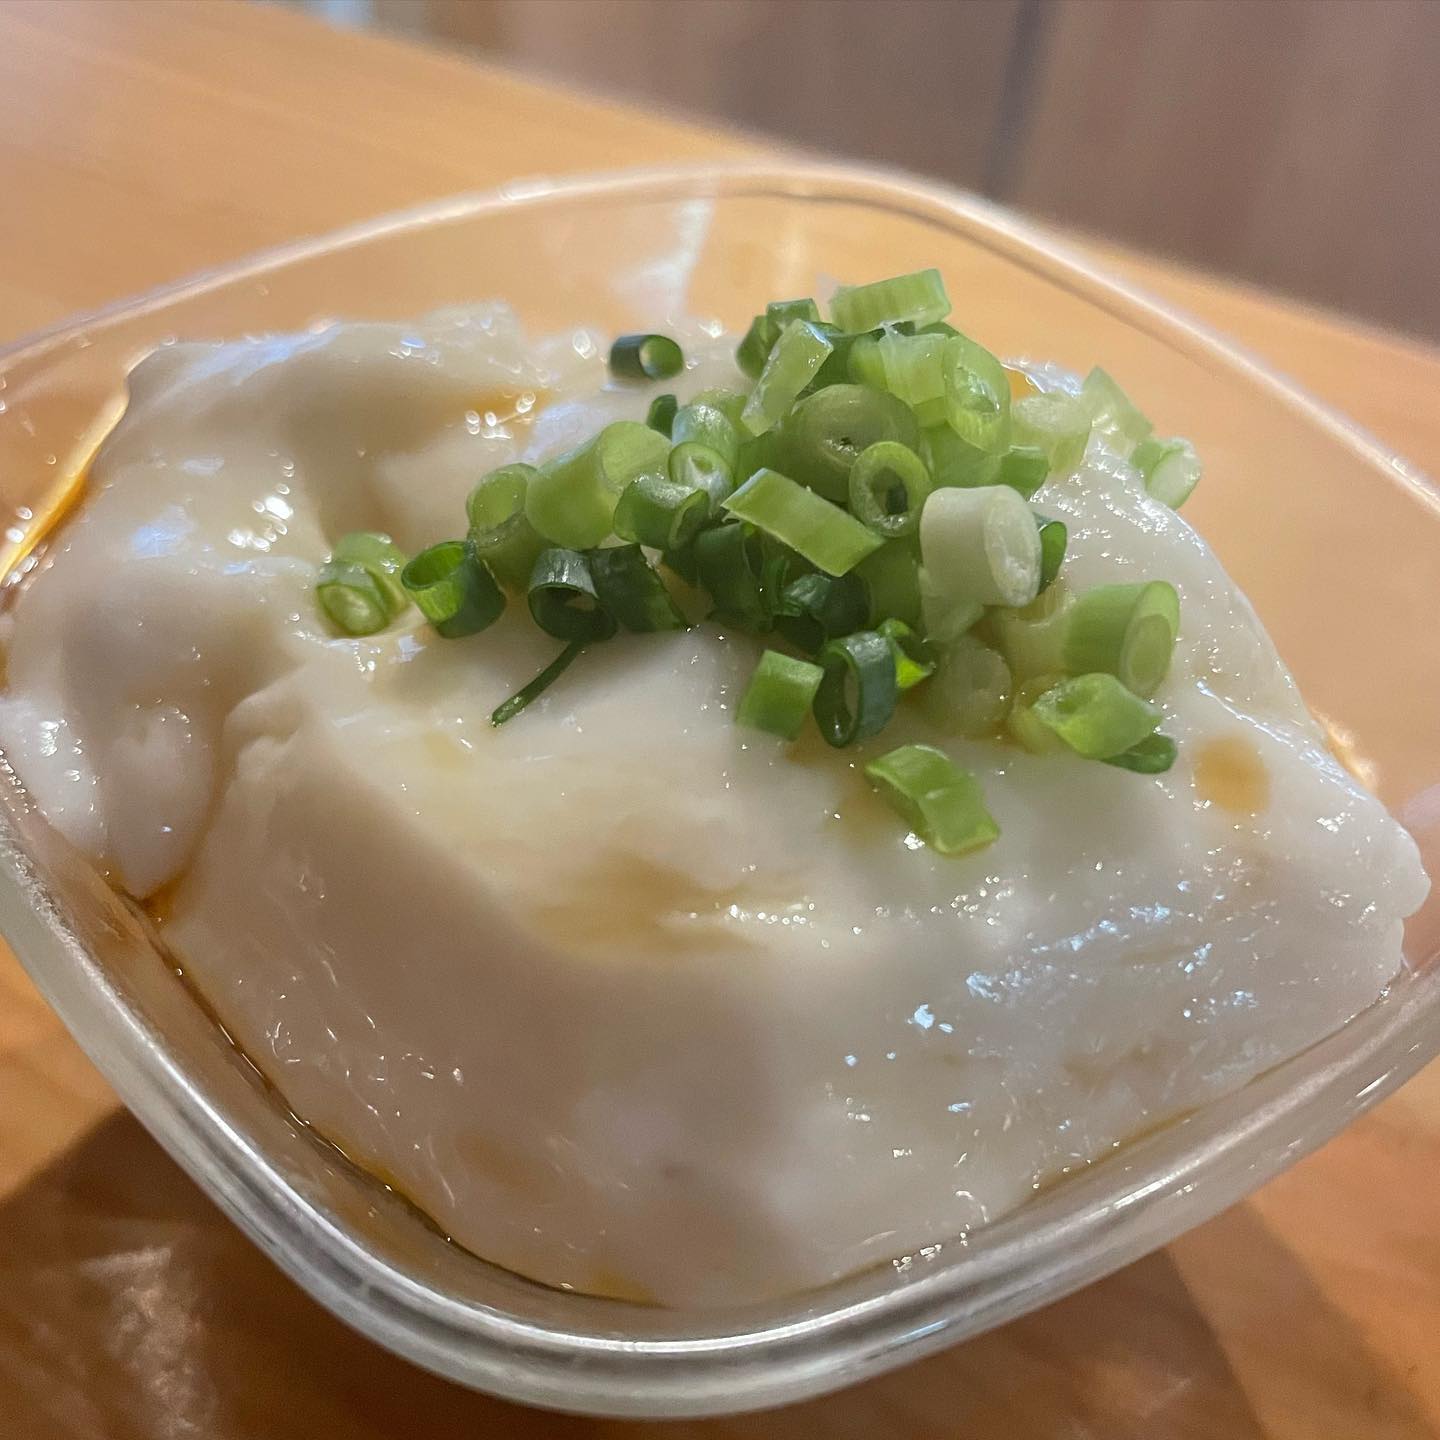 自家製じーまみー豆腐！！
フライングスタート
今年もやってきました。
沖縄フェア！！
明日、沖縄から直で物が届きます！
是非、沖縄の味を味わってください(//∇//)